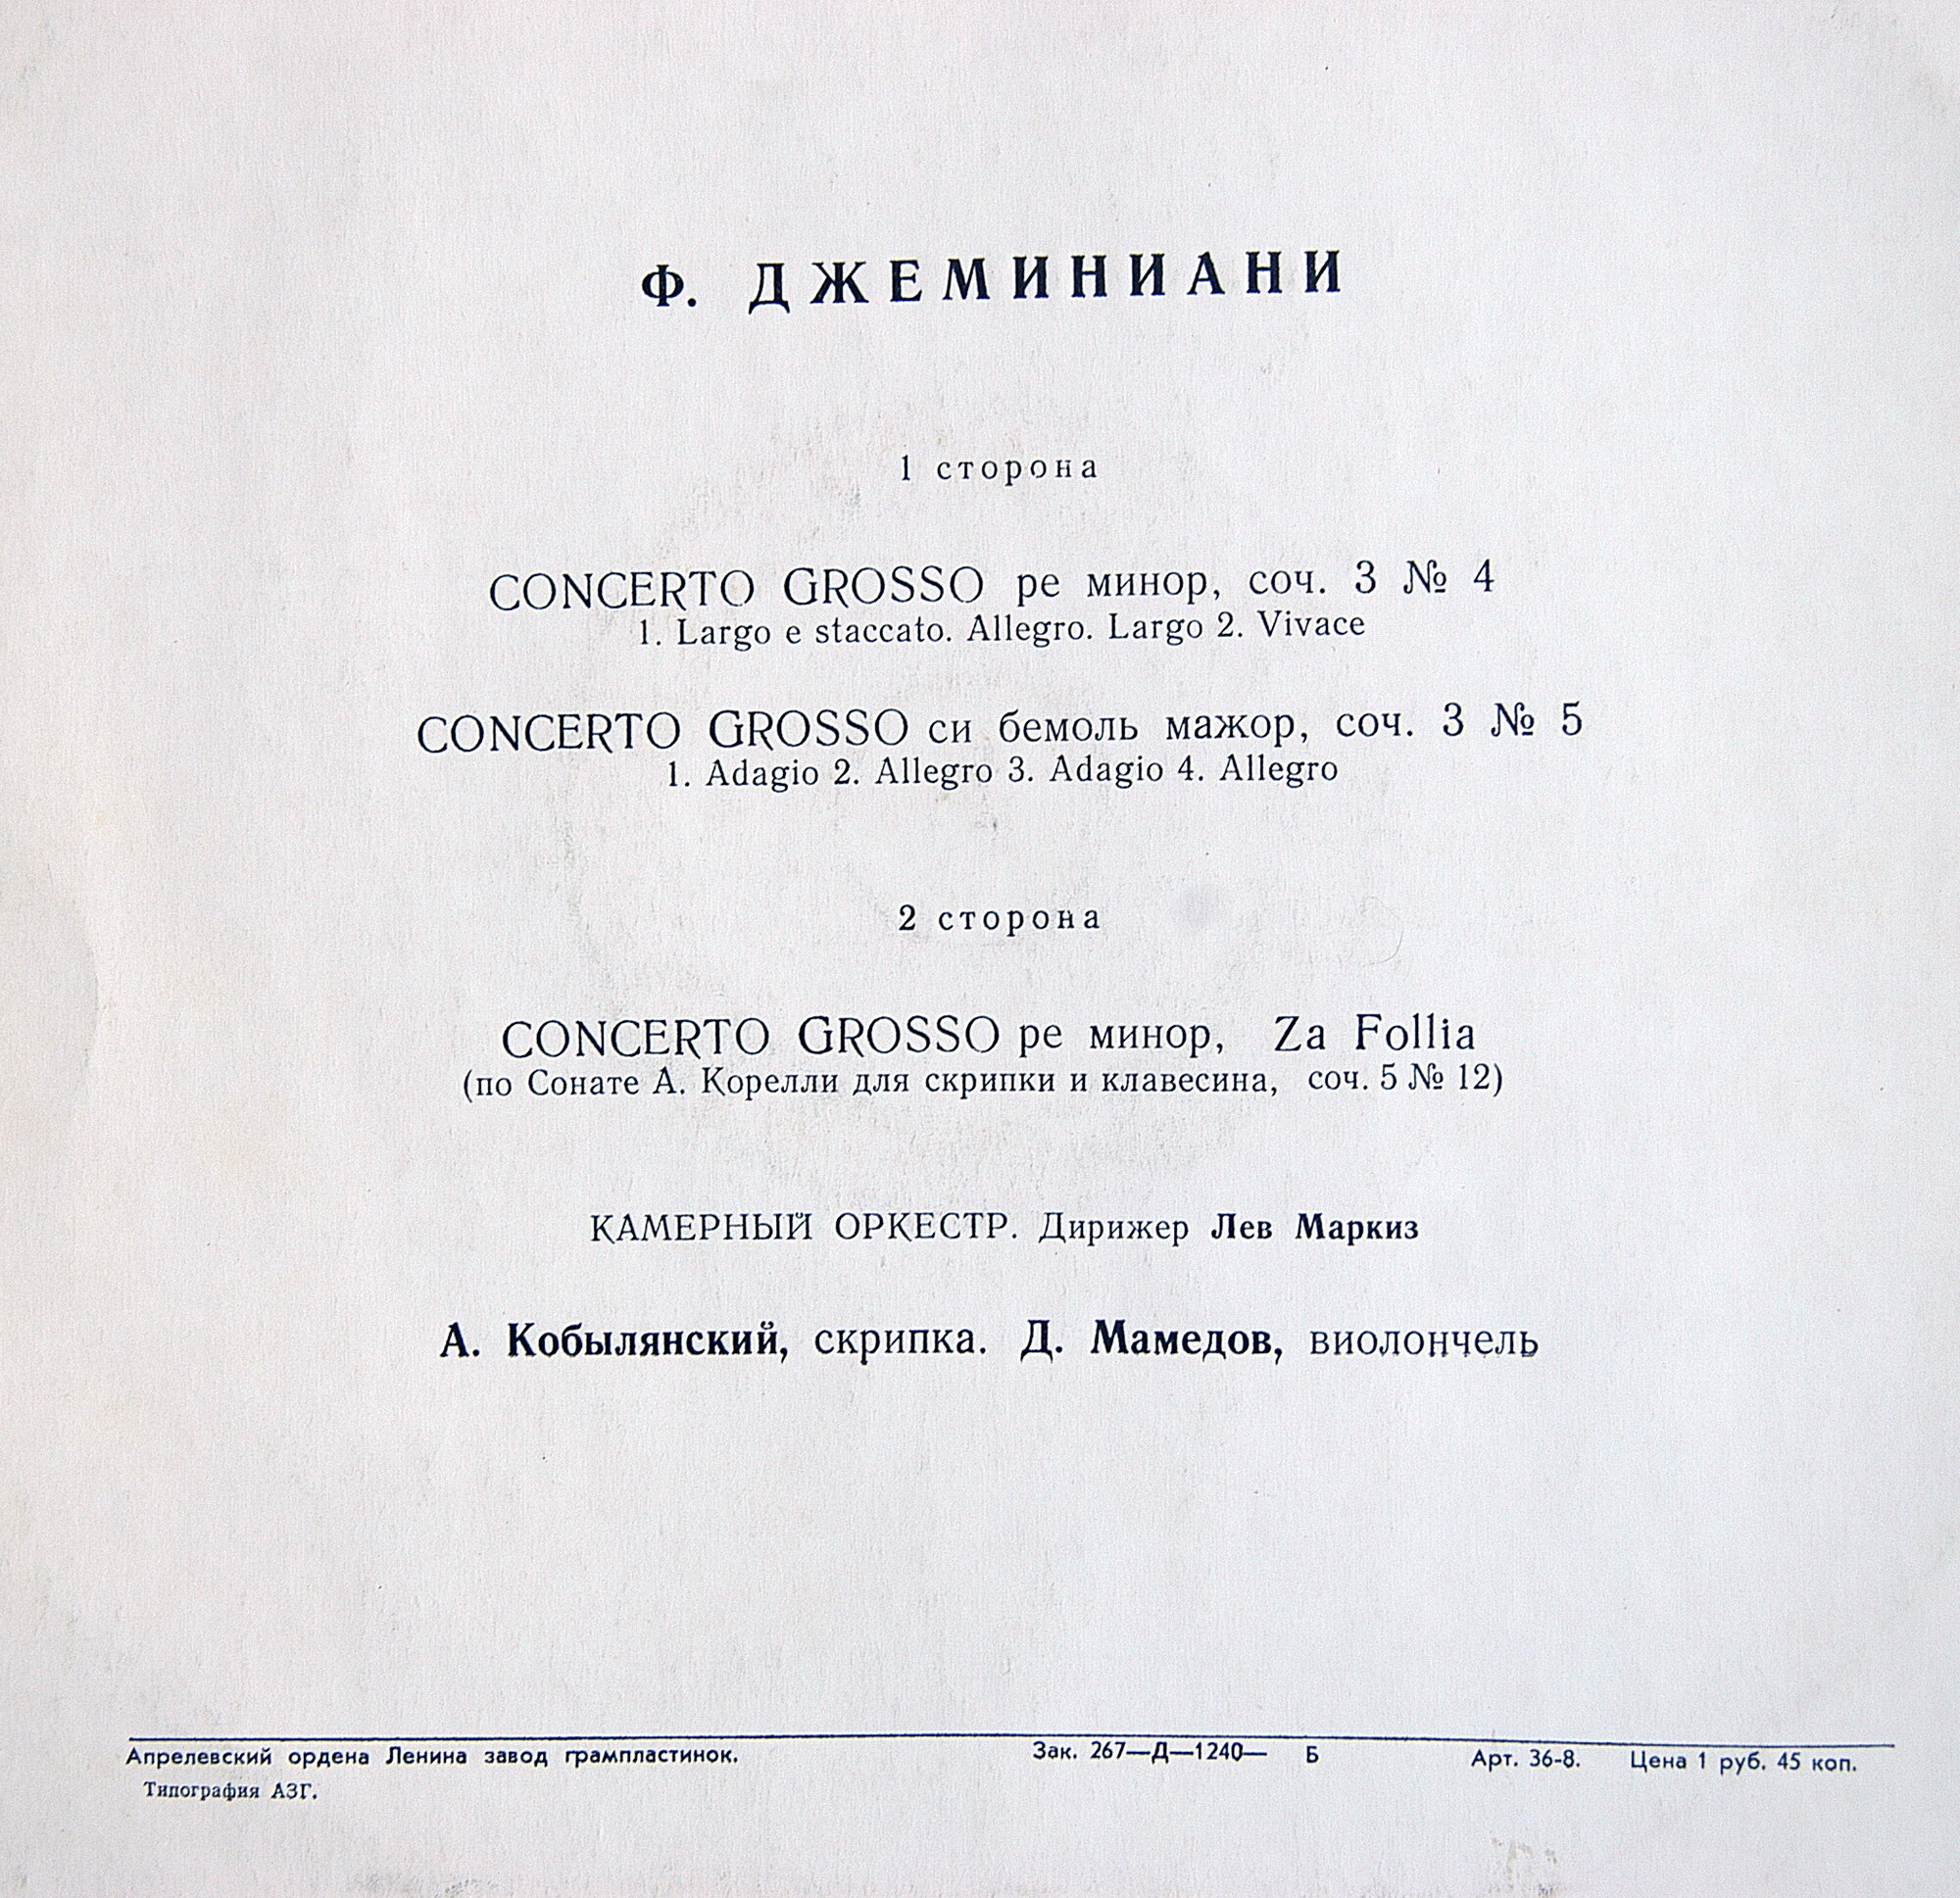 Ф. Джеминиани: Три concerti grossi (Лев Маркиз)